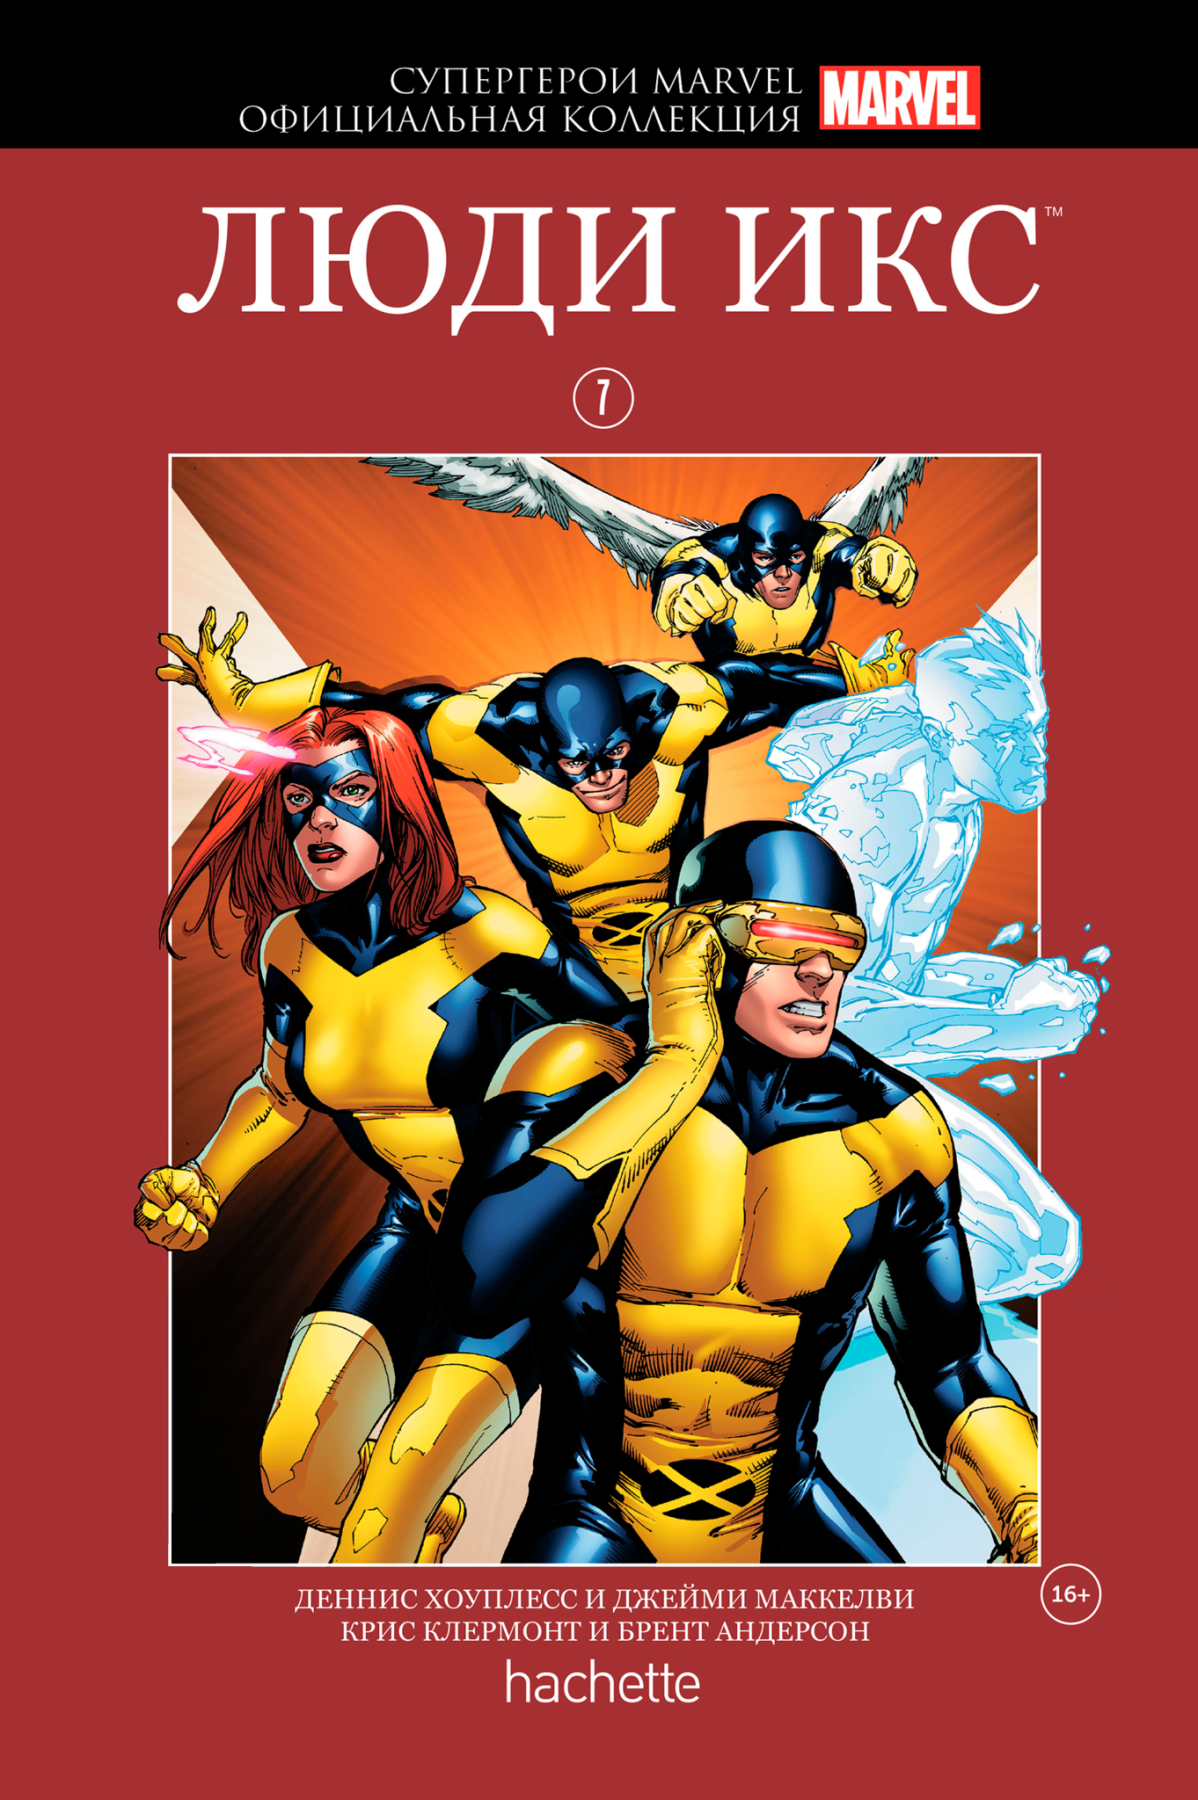 Комикс на русском языке «Супергерои Marvel. Официальная коллекция. Том 7. Люди Икс»